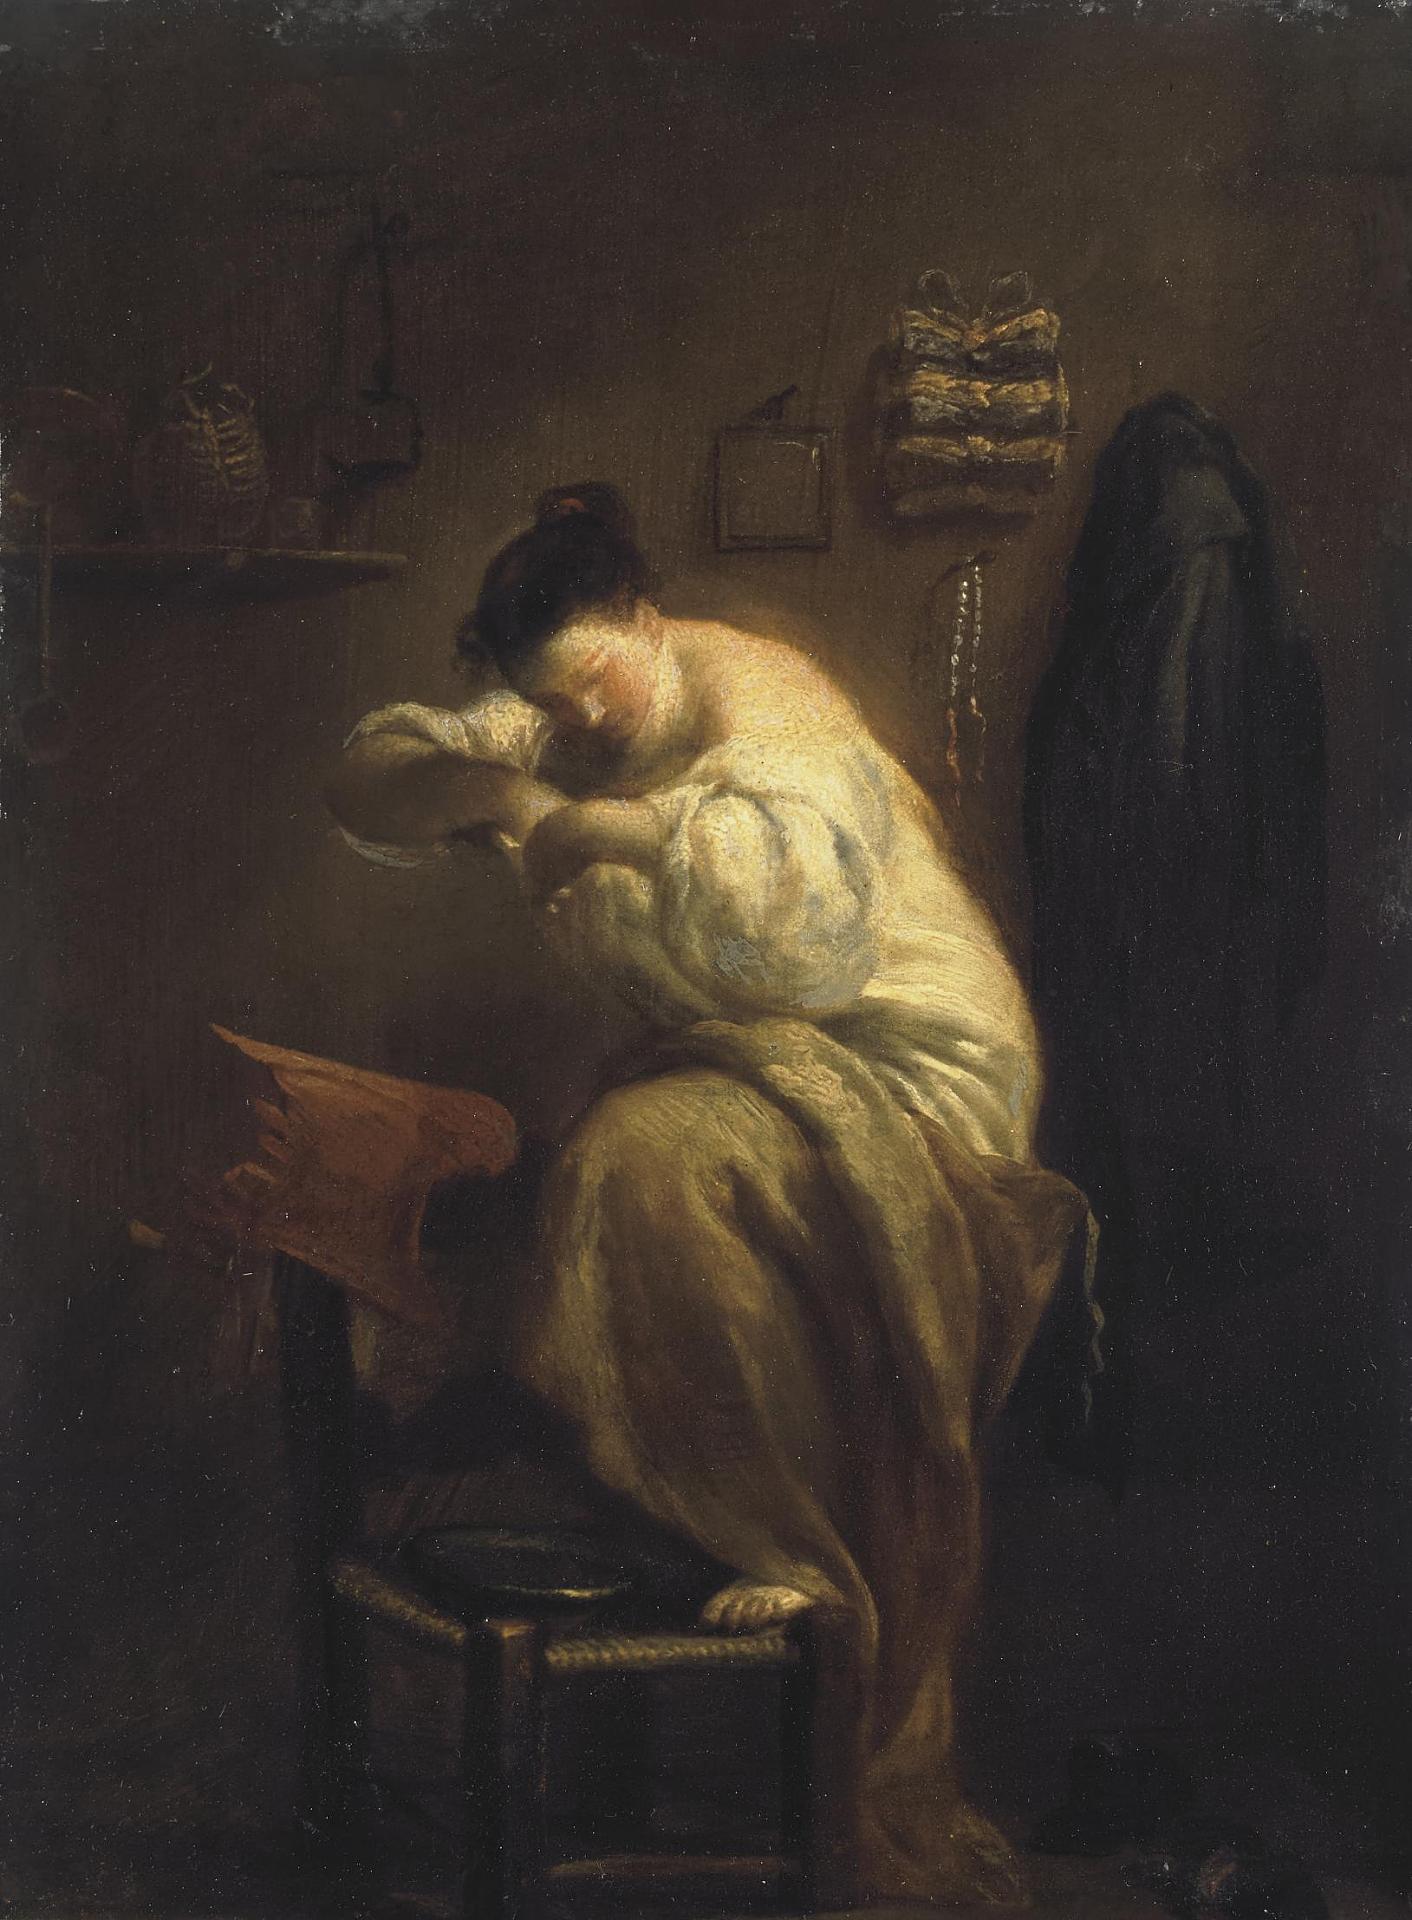 Джузеппе Мариа Креспи (Ло Спаньоло). "Женщина, Ищущая блох". 1710. Эрмитаж, Санкт-Петербург.